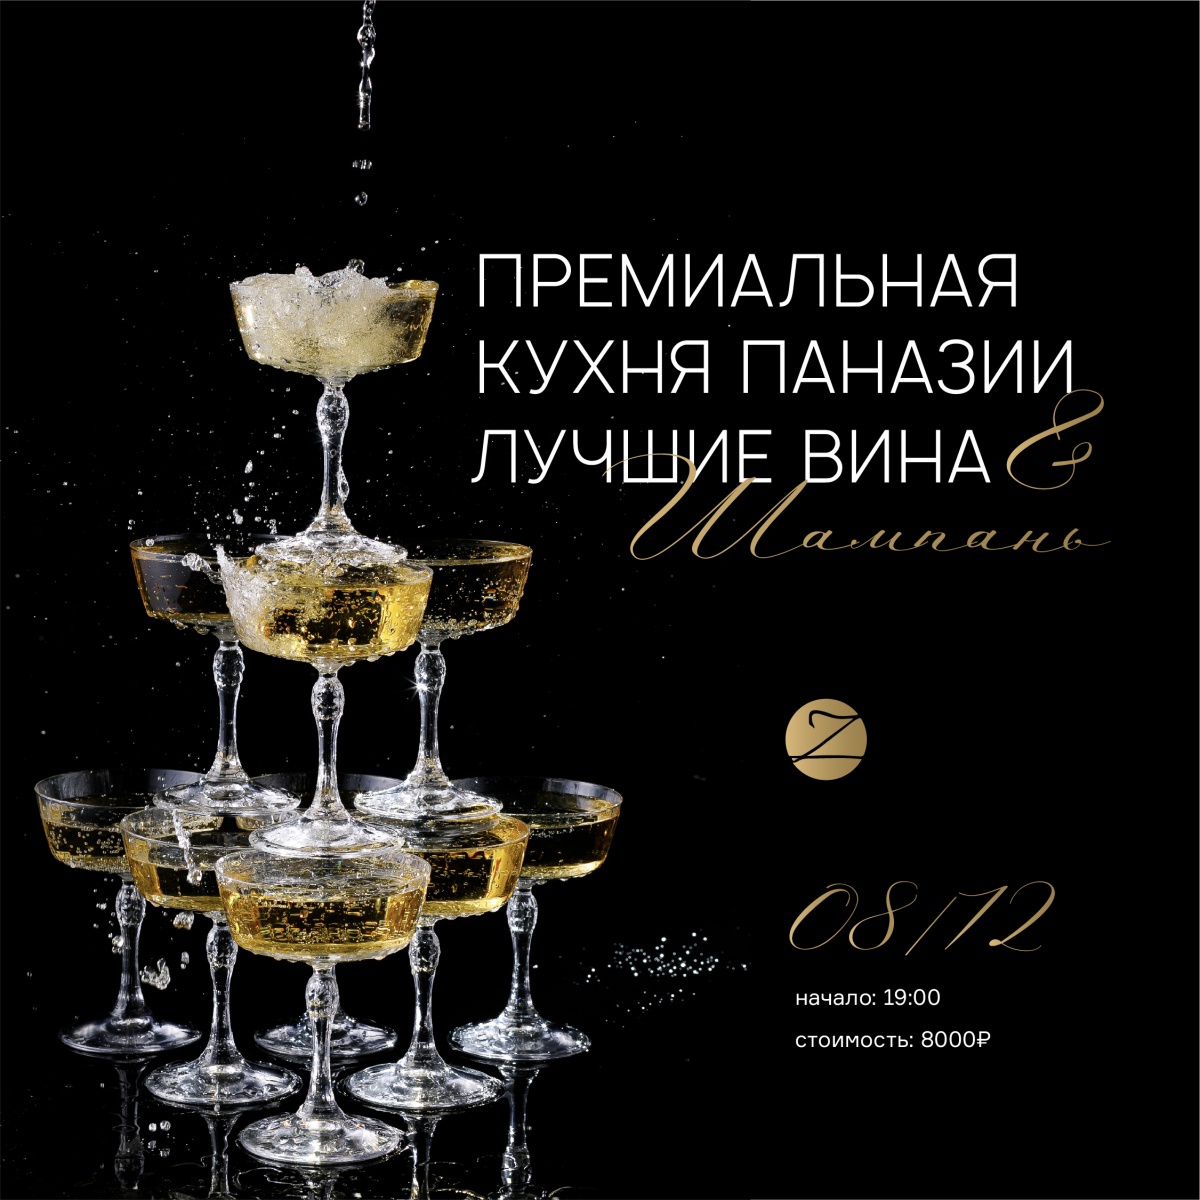 Дегустация Шампанского во Владивостоке в ZUMA 8 декабря!